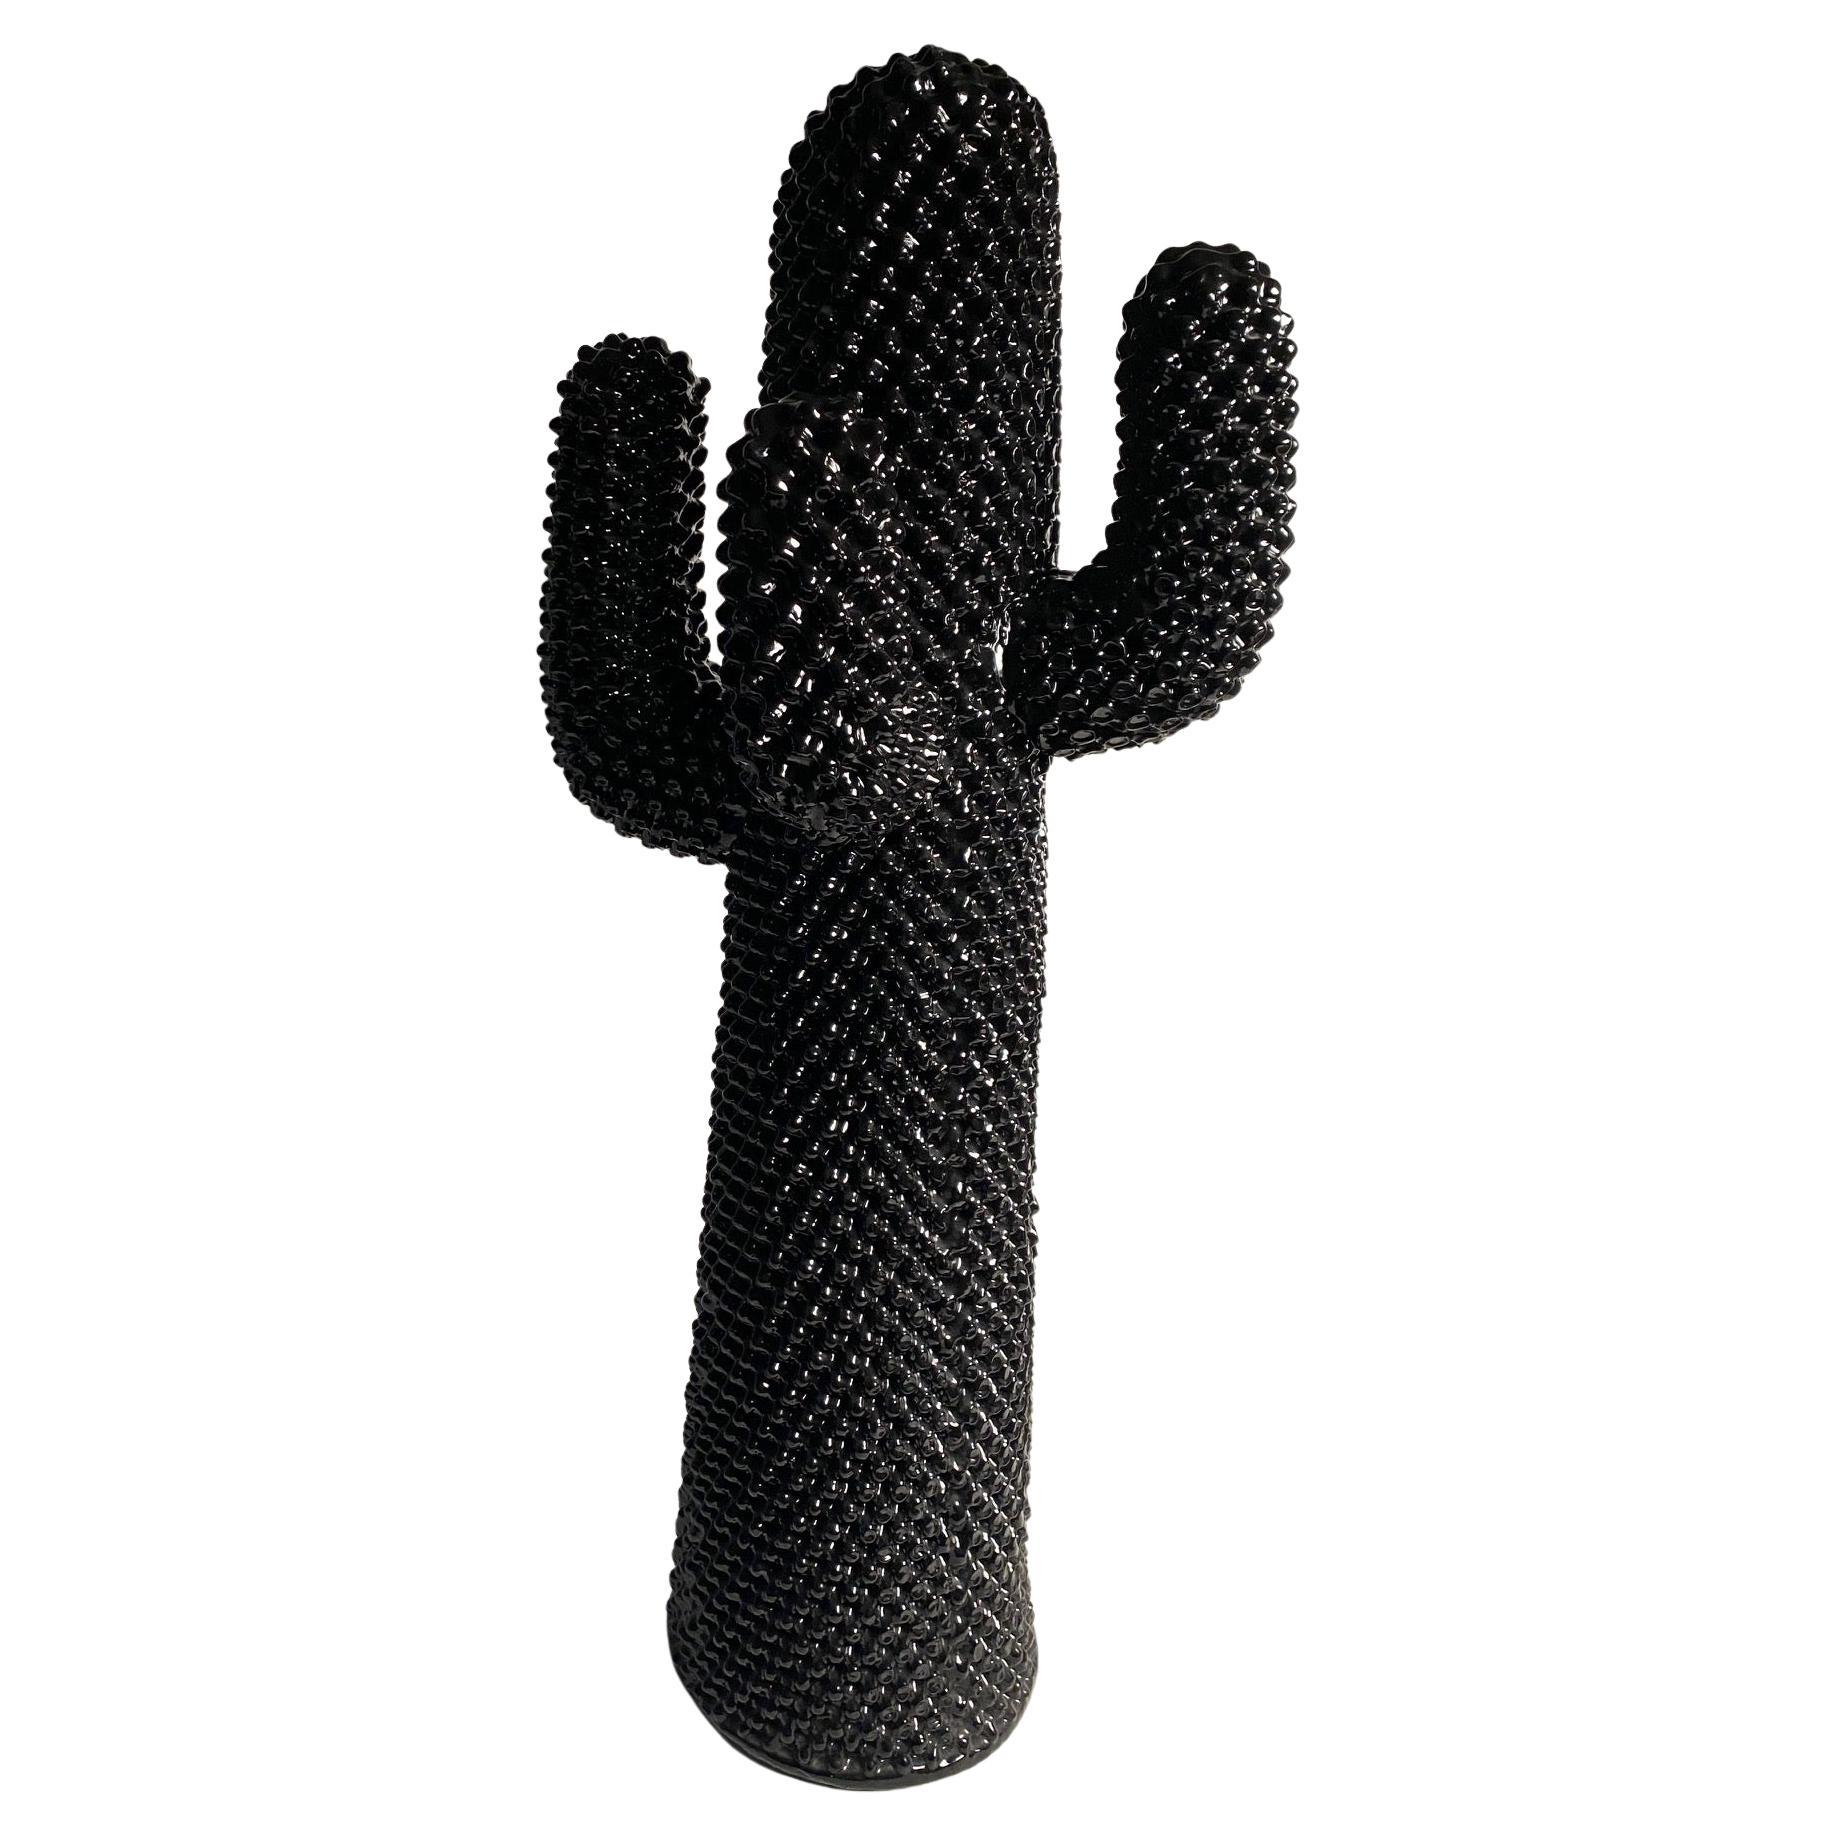 La colère du manteau Cactus est une icône du design, elle a été conçue par Guido Drocco et Franco Mello pour Gufram au début des années 70. Cette pièce emblématique est toujours produite à ce jour, avec une variation de couleurs et de style selon